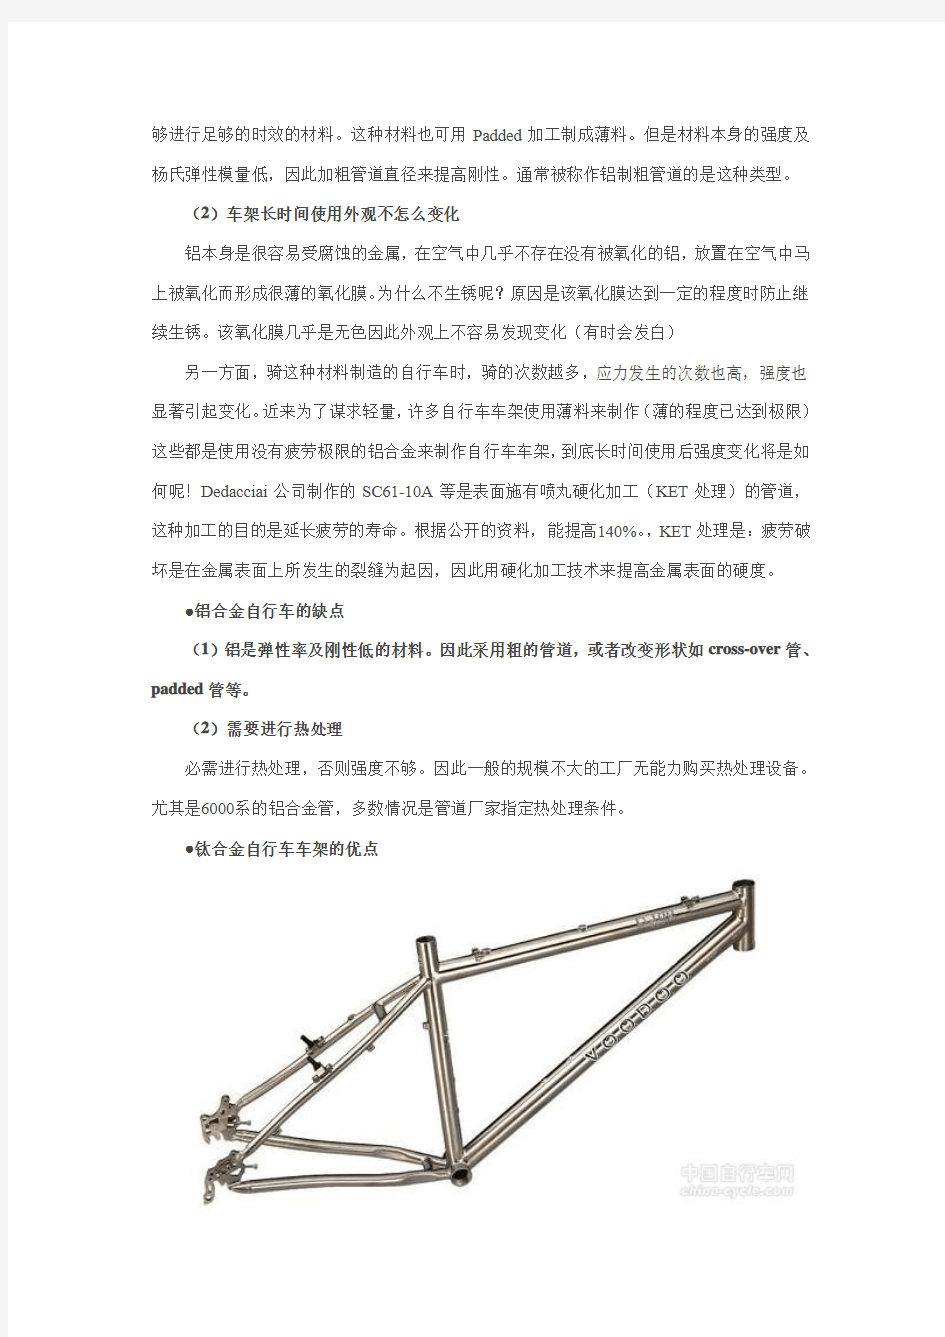 铝合金,钛合金,镁合金,碳纤维材质自行车的优缺点